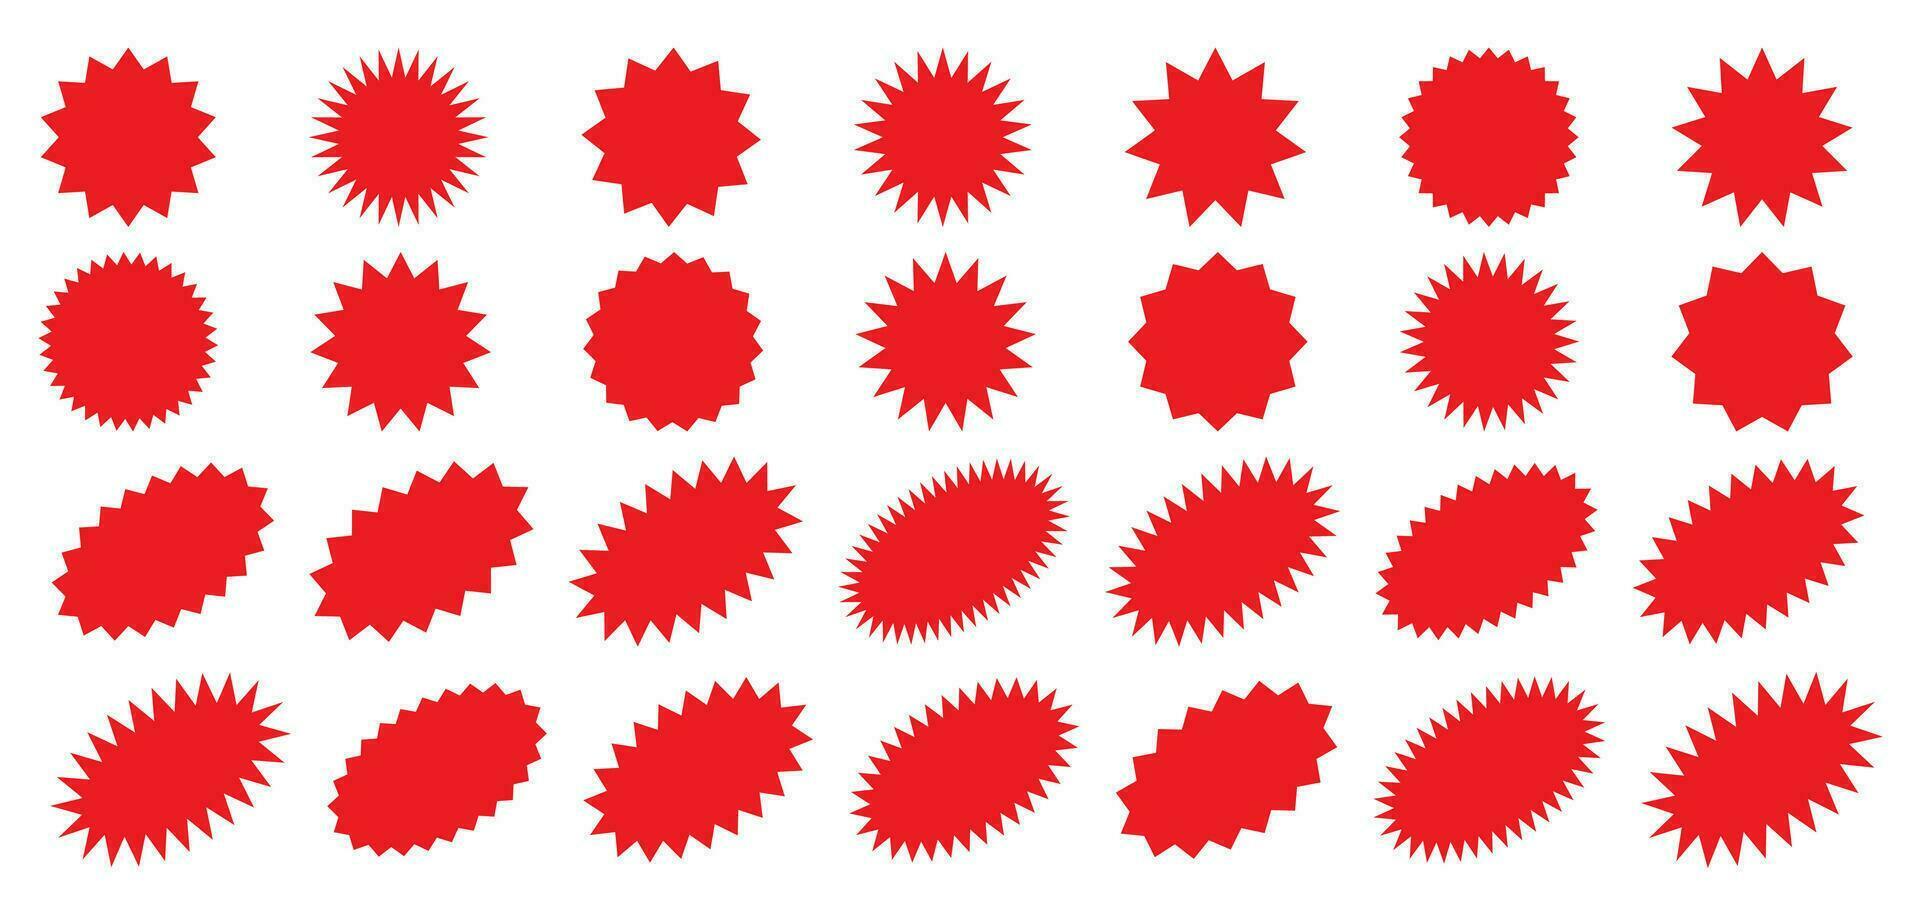 starburst rouge autocollant ensemble - collection de spécial offre vente rond et ovale sunburst Étiquettes et boutons isolé sur blanc Contexte. autocollants et badges avec étoile bords pour promo publicité. vecteur